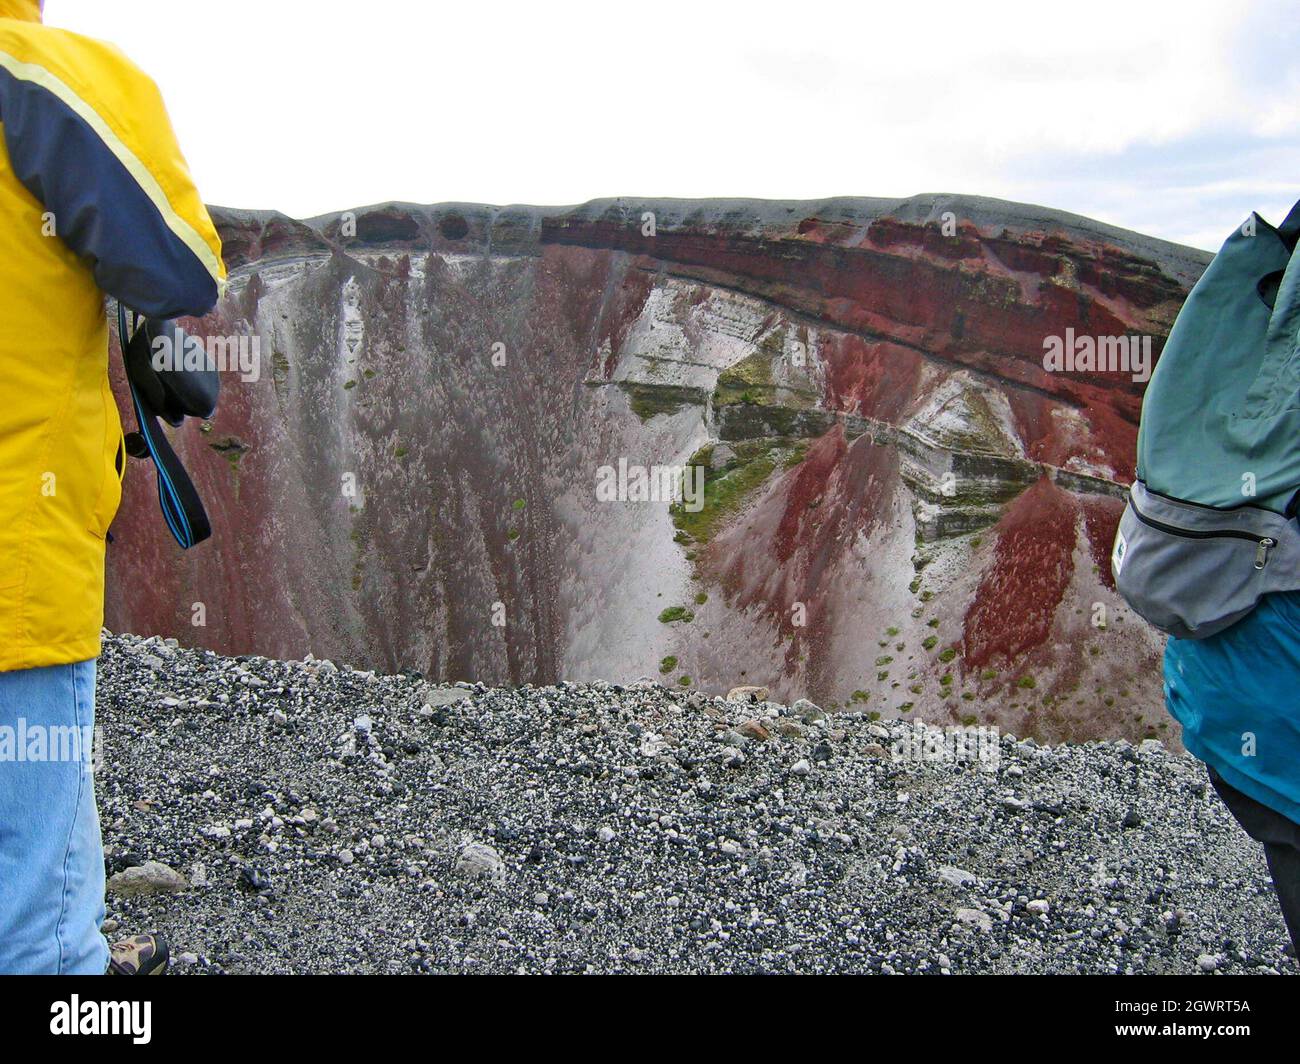 I visitatori si alzano in cima al monte Tarawera, un vulcano dormiente noto per la sua eruzione del 1886. Situato nella regione della Baia di Plenty nella zona vulcanica di Taupo, le pareti del vulcano di fessura delle scogliere di scorie rosse che si sgretolano offrono un paesaggio surreale mentre i visitatori fanno un'escursione nelle scogliere bruciate piene di tregua. Foto Stock